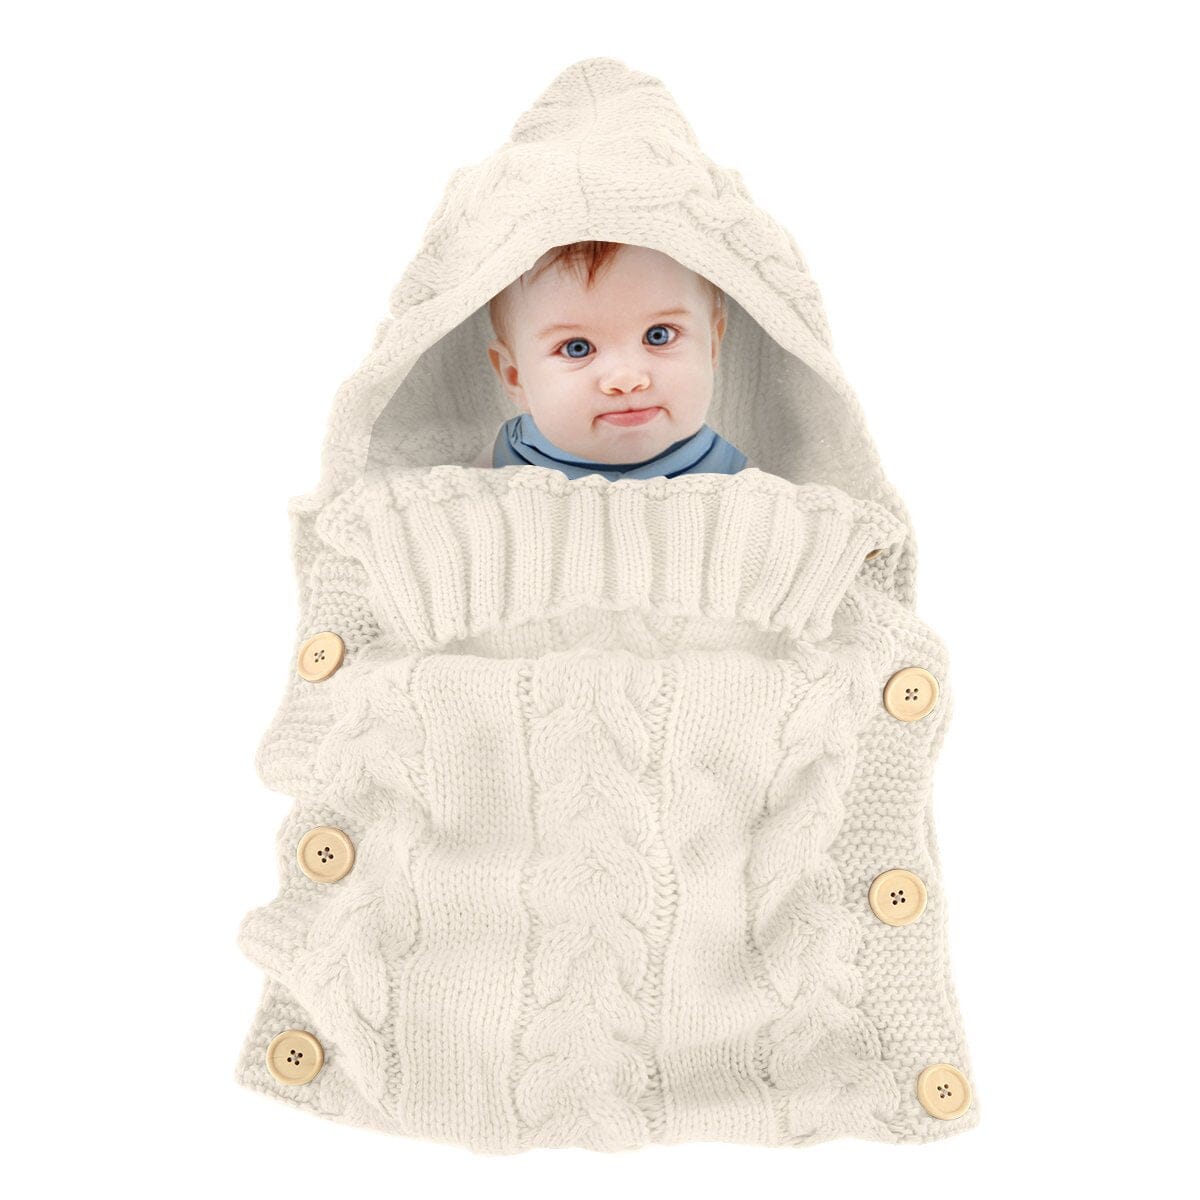 Handmade Hooded Knitted Baby Bag Cream White (Only Few Left) PillowNap